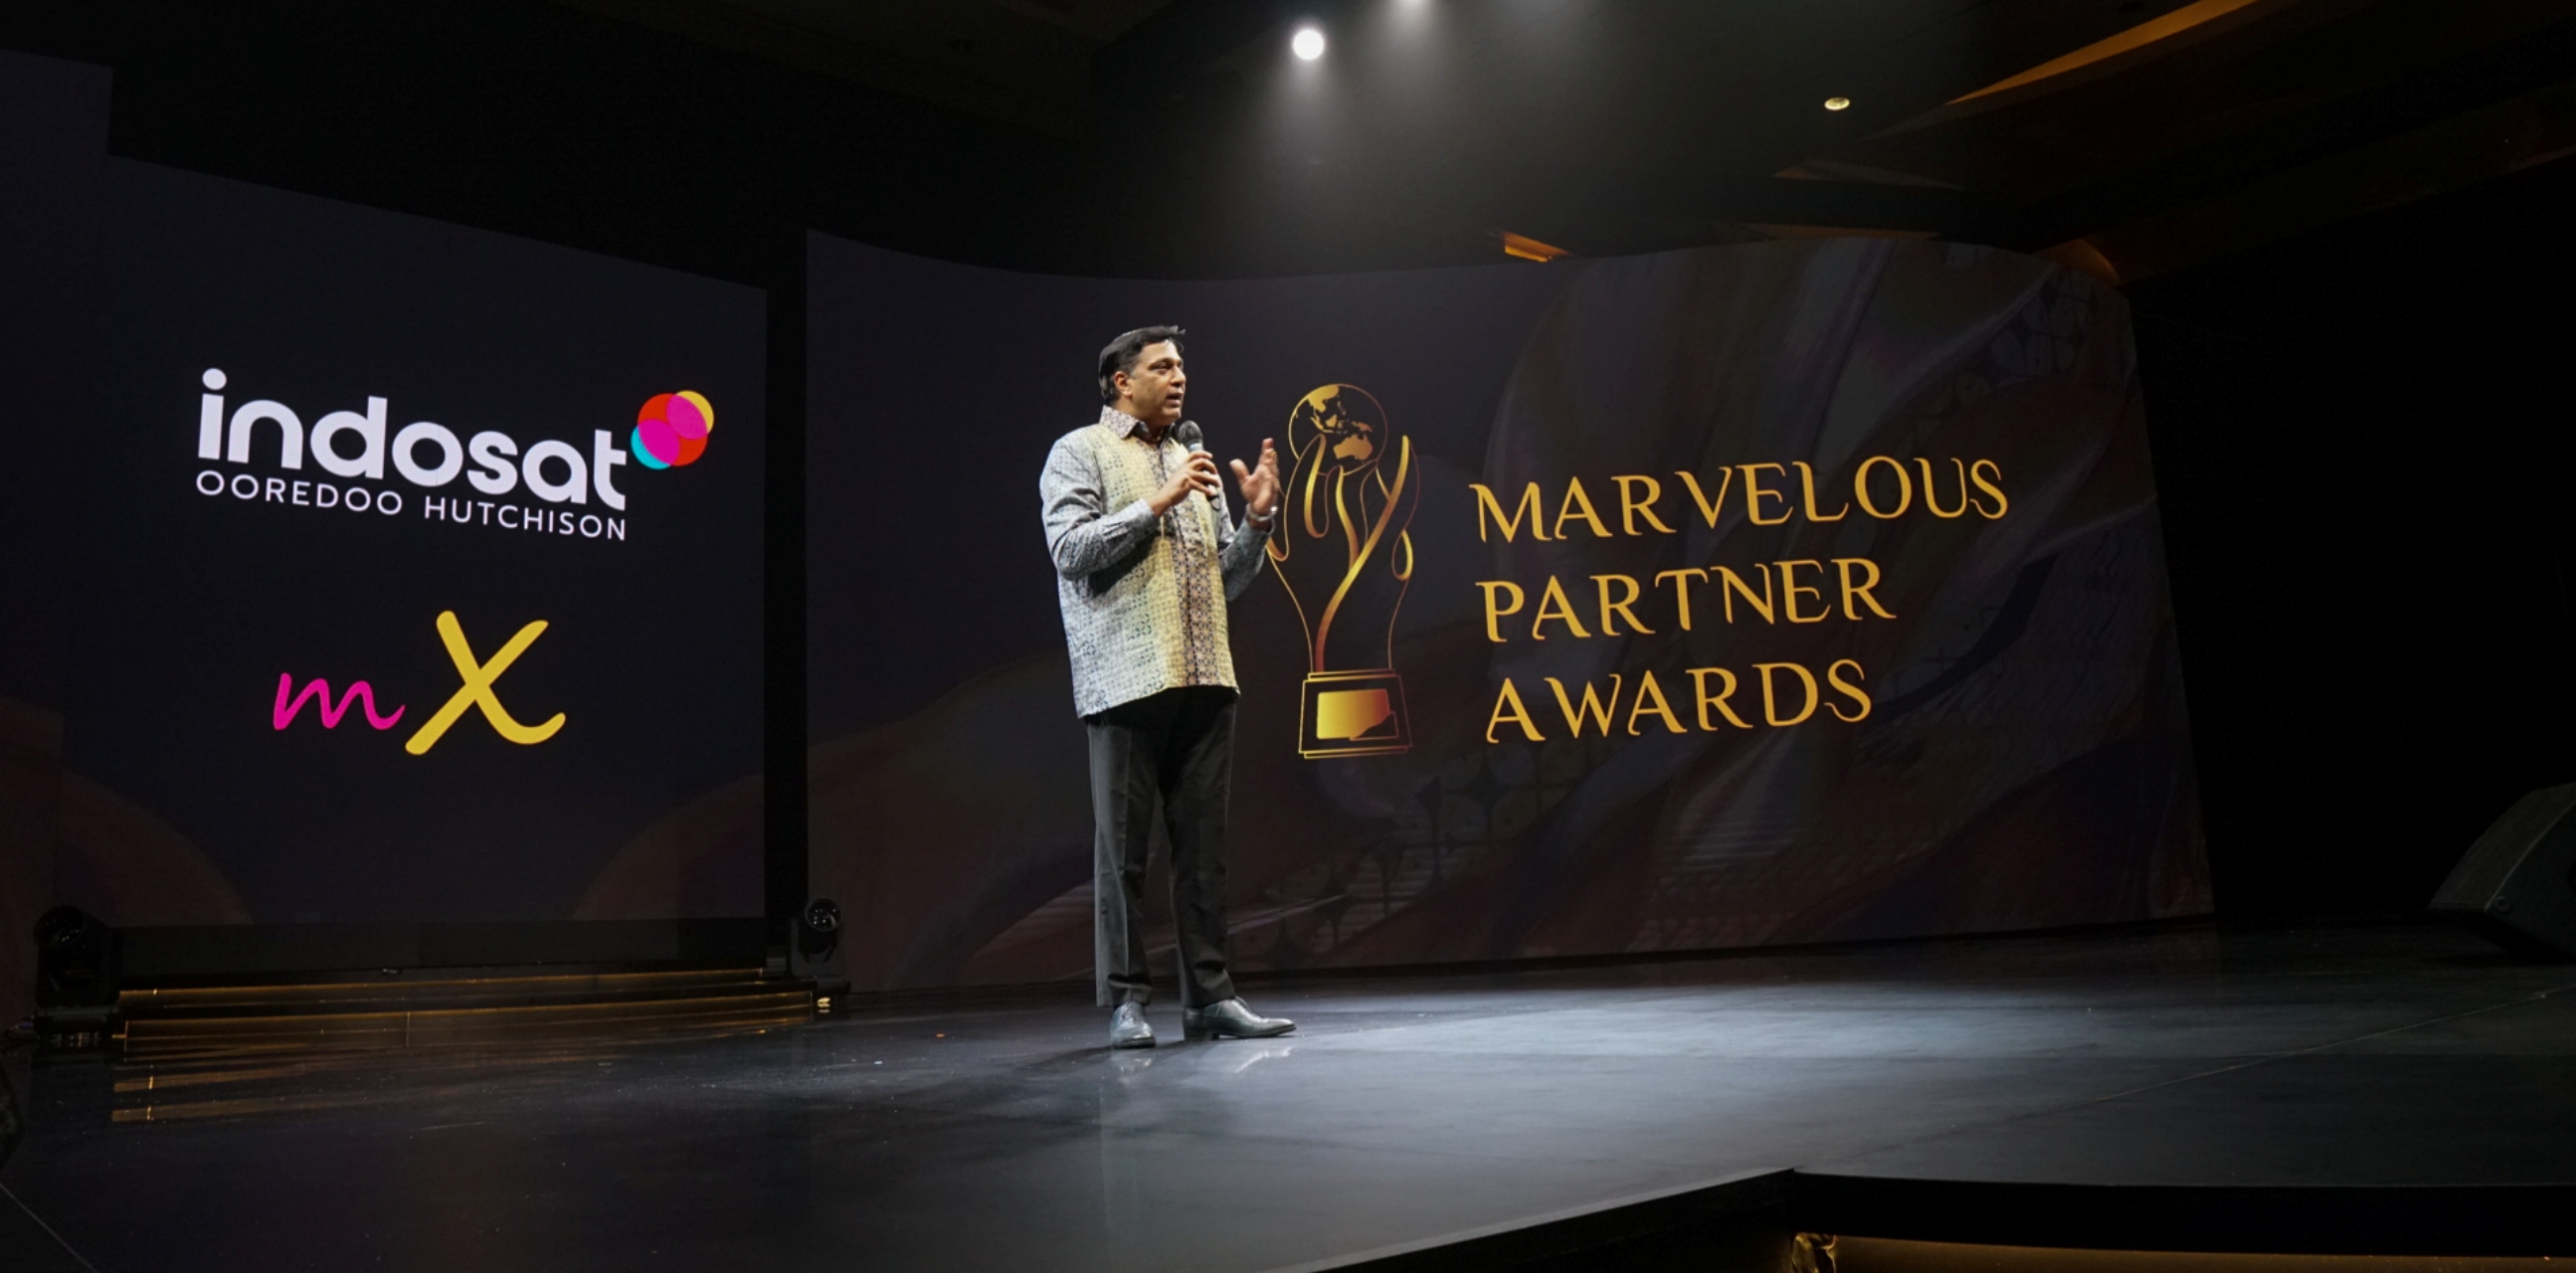 Apresiasi mitra dalam pengalaman digital, Indosat gelar Marvelous Partner Awards 2023